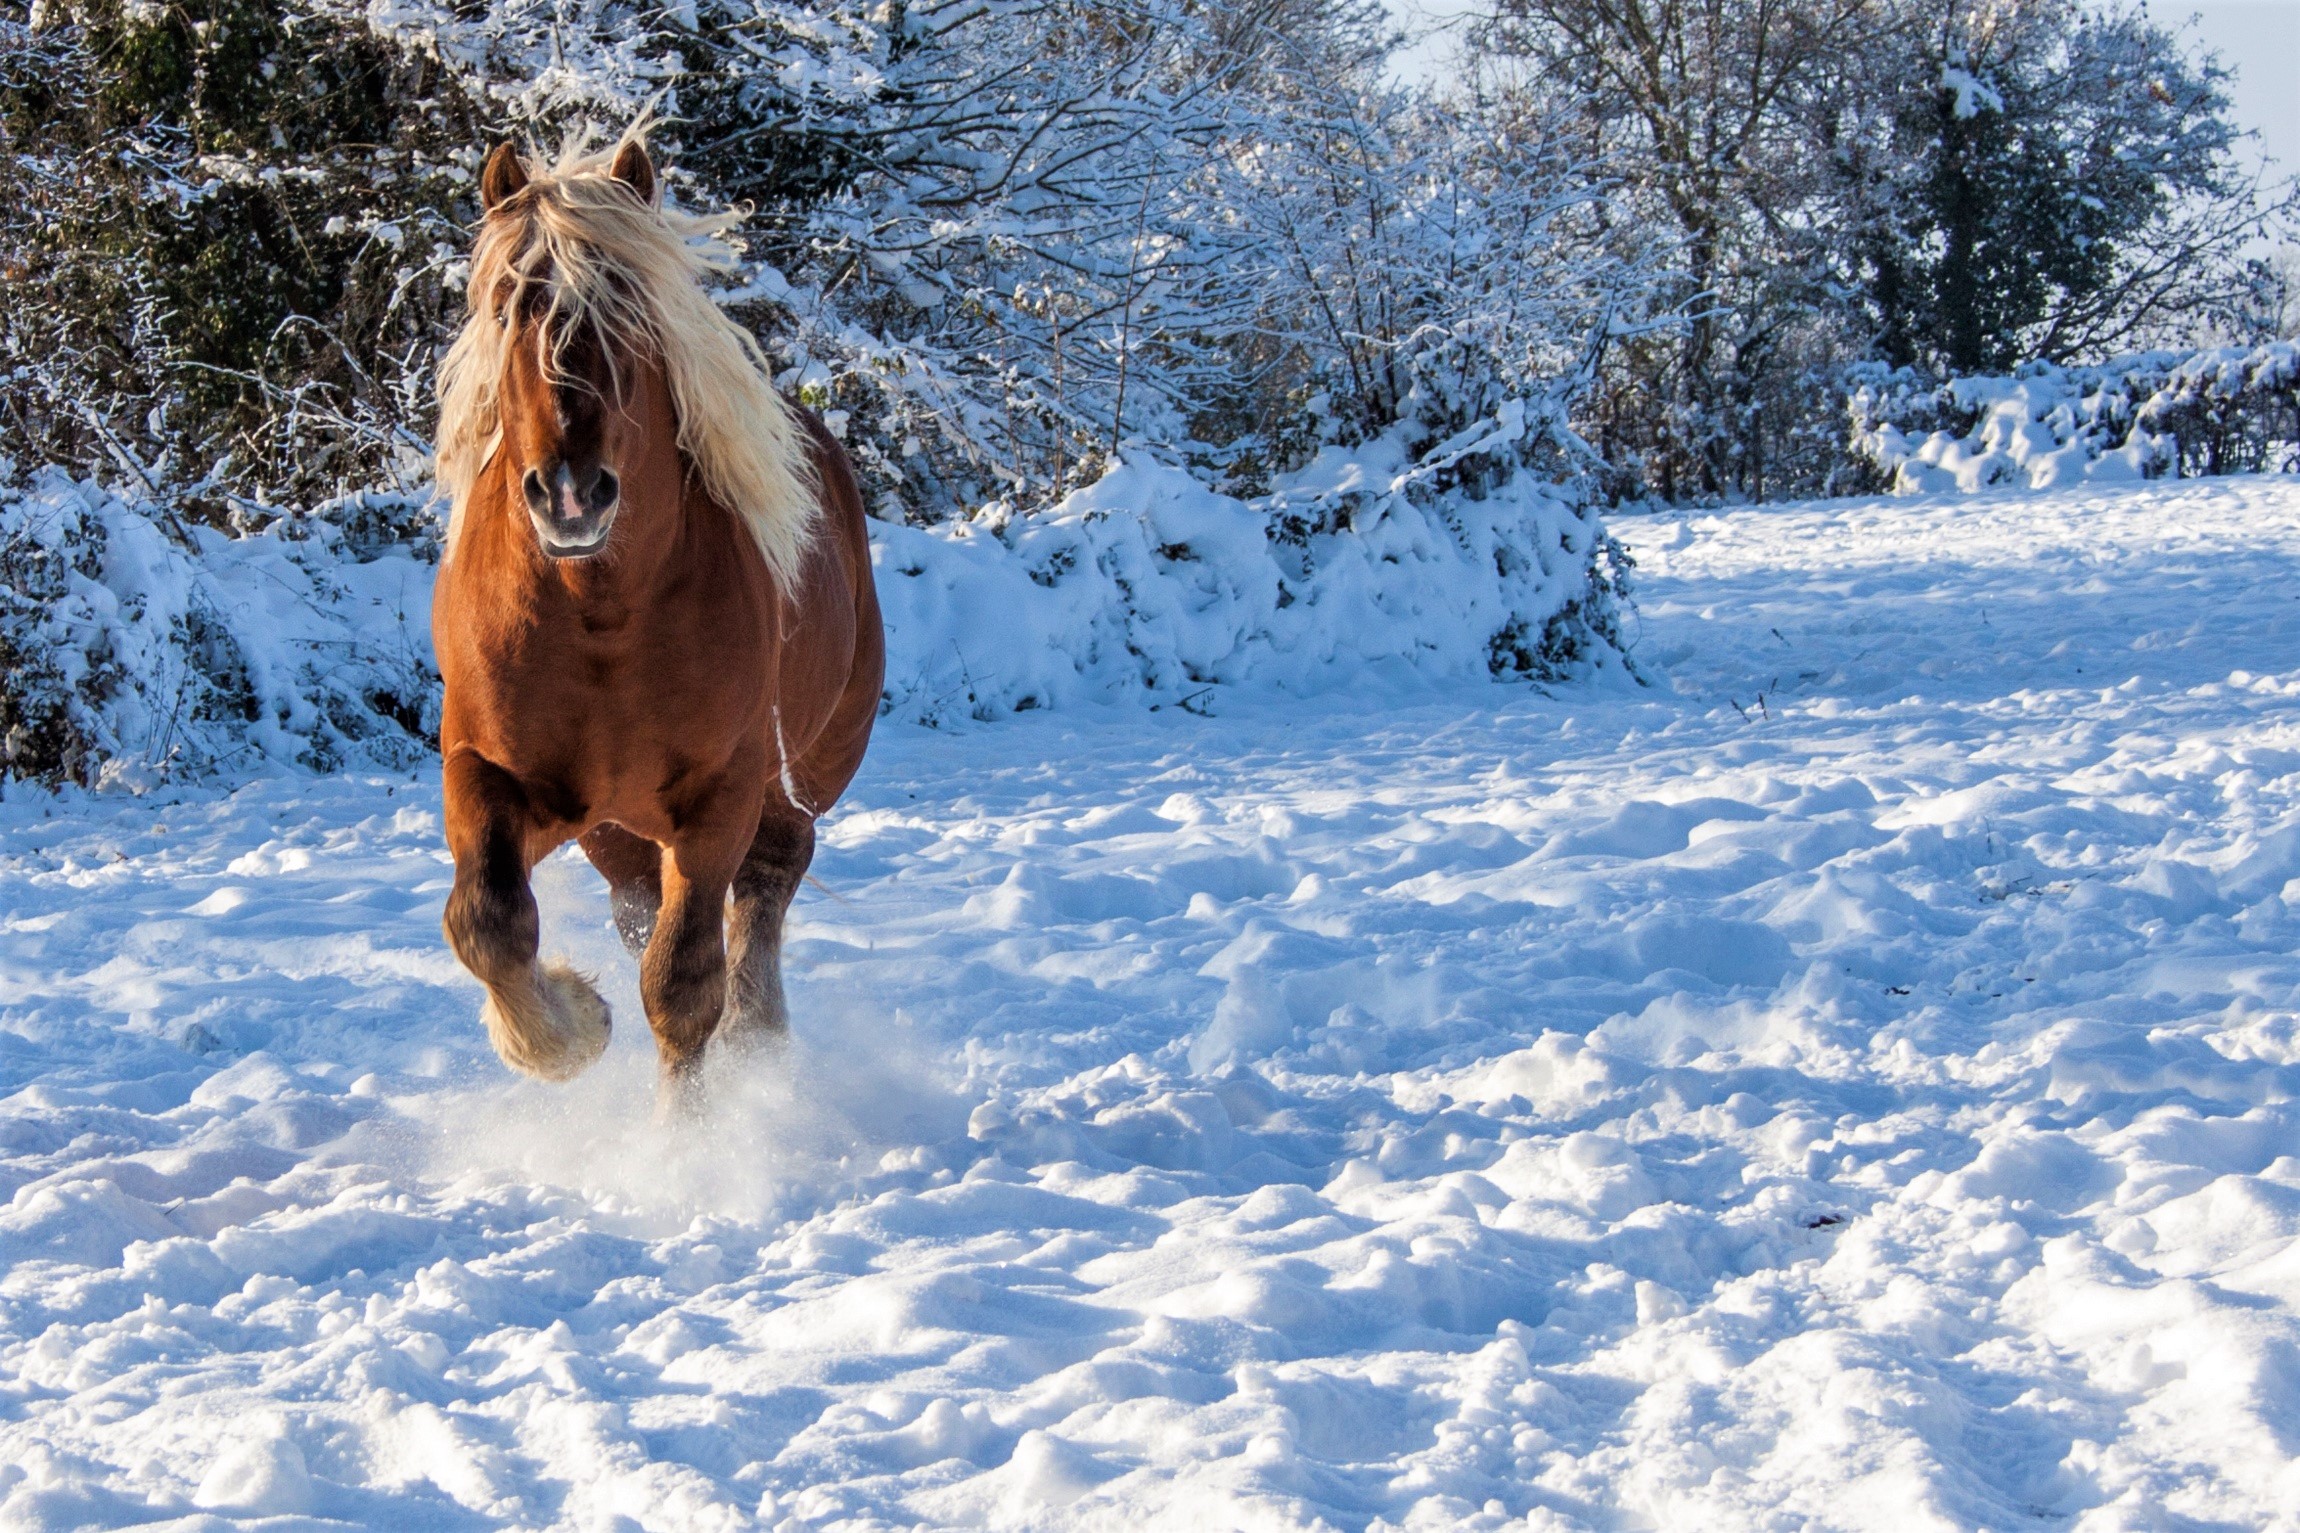 Скачать обои бесплатно Животные, Зима, Снег, Лошадь картинка на рабочий стол ПК